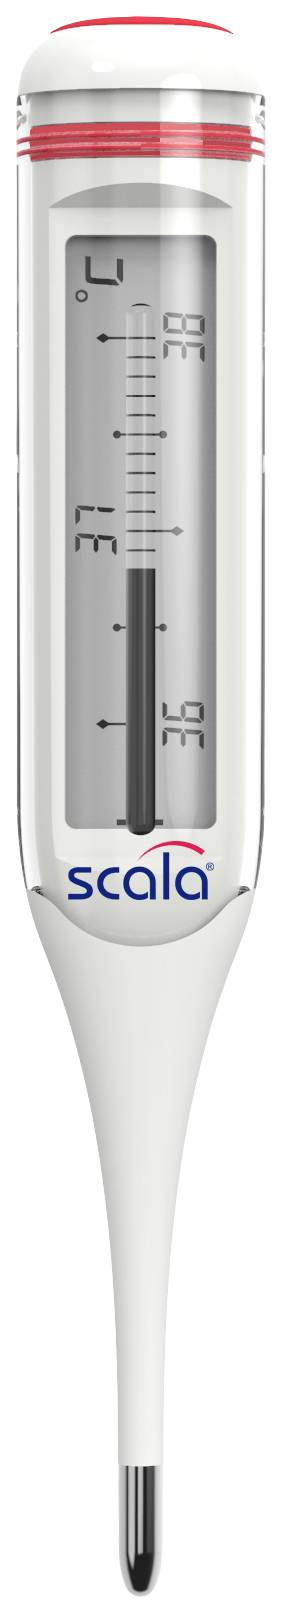 Scala Termometro Digitale Clinico Febbre SC 28 Flex Speed 10 sec :  : Salute e cura della persona